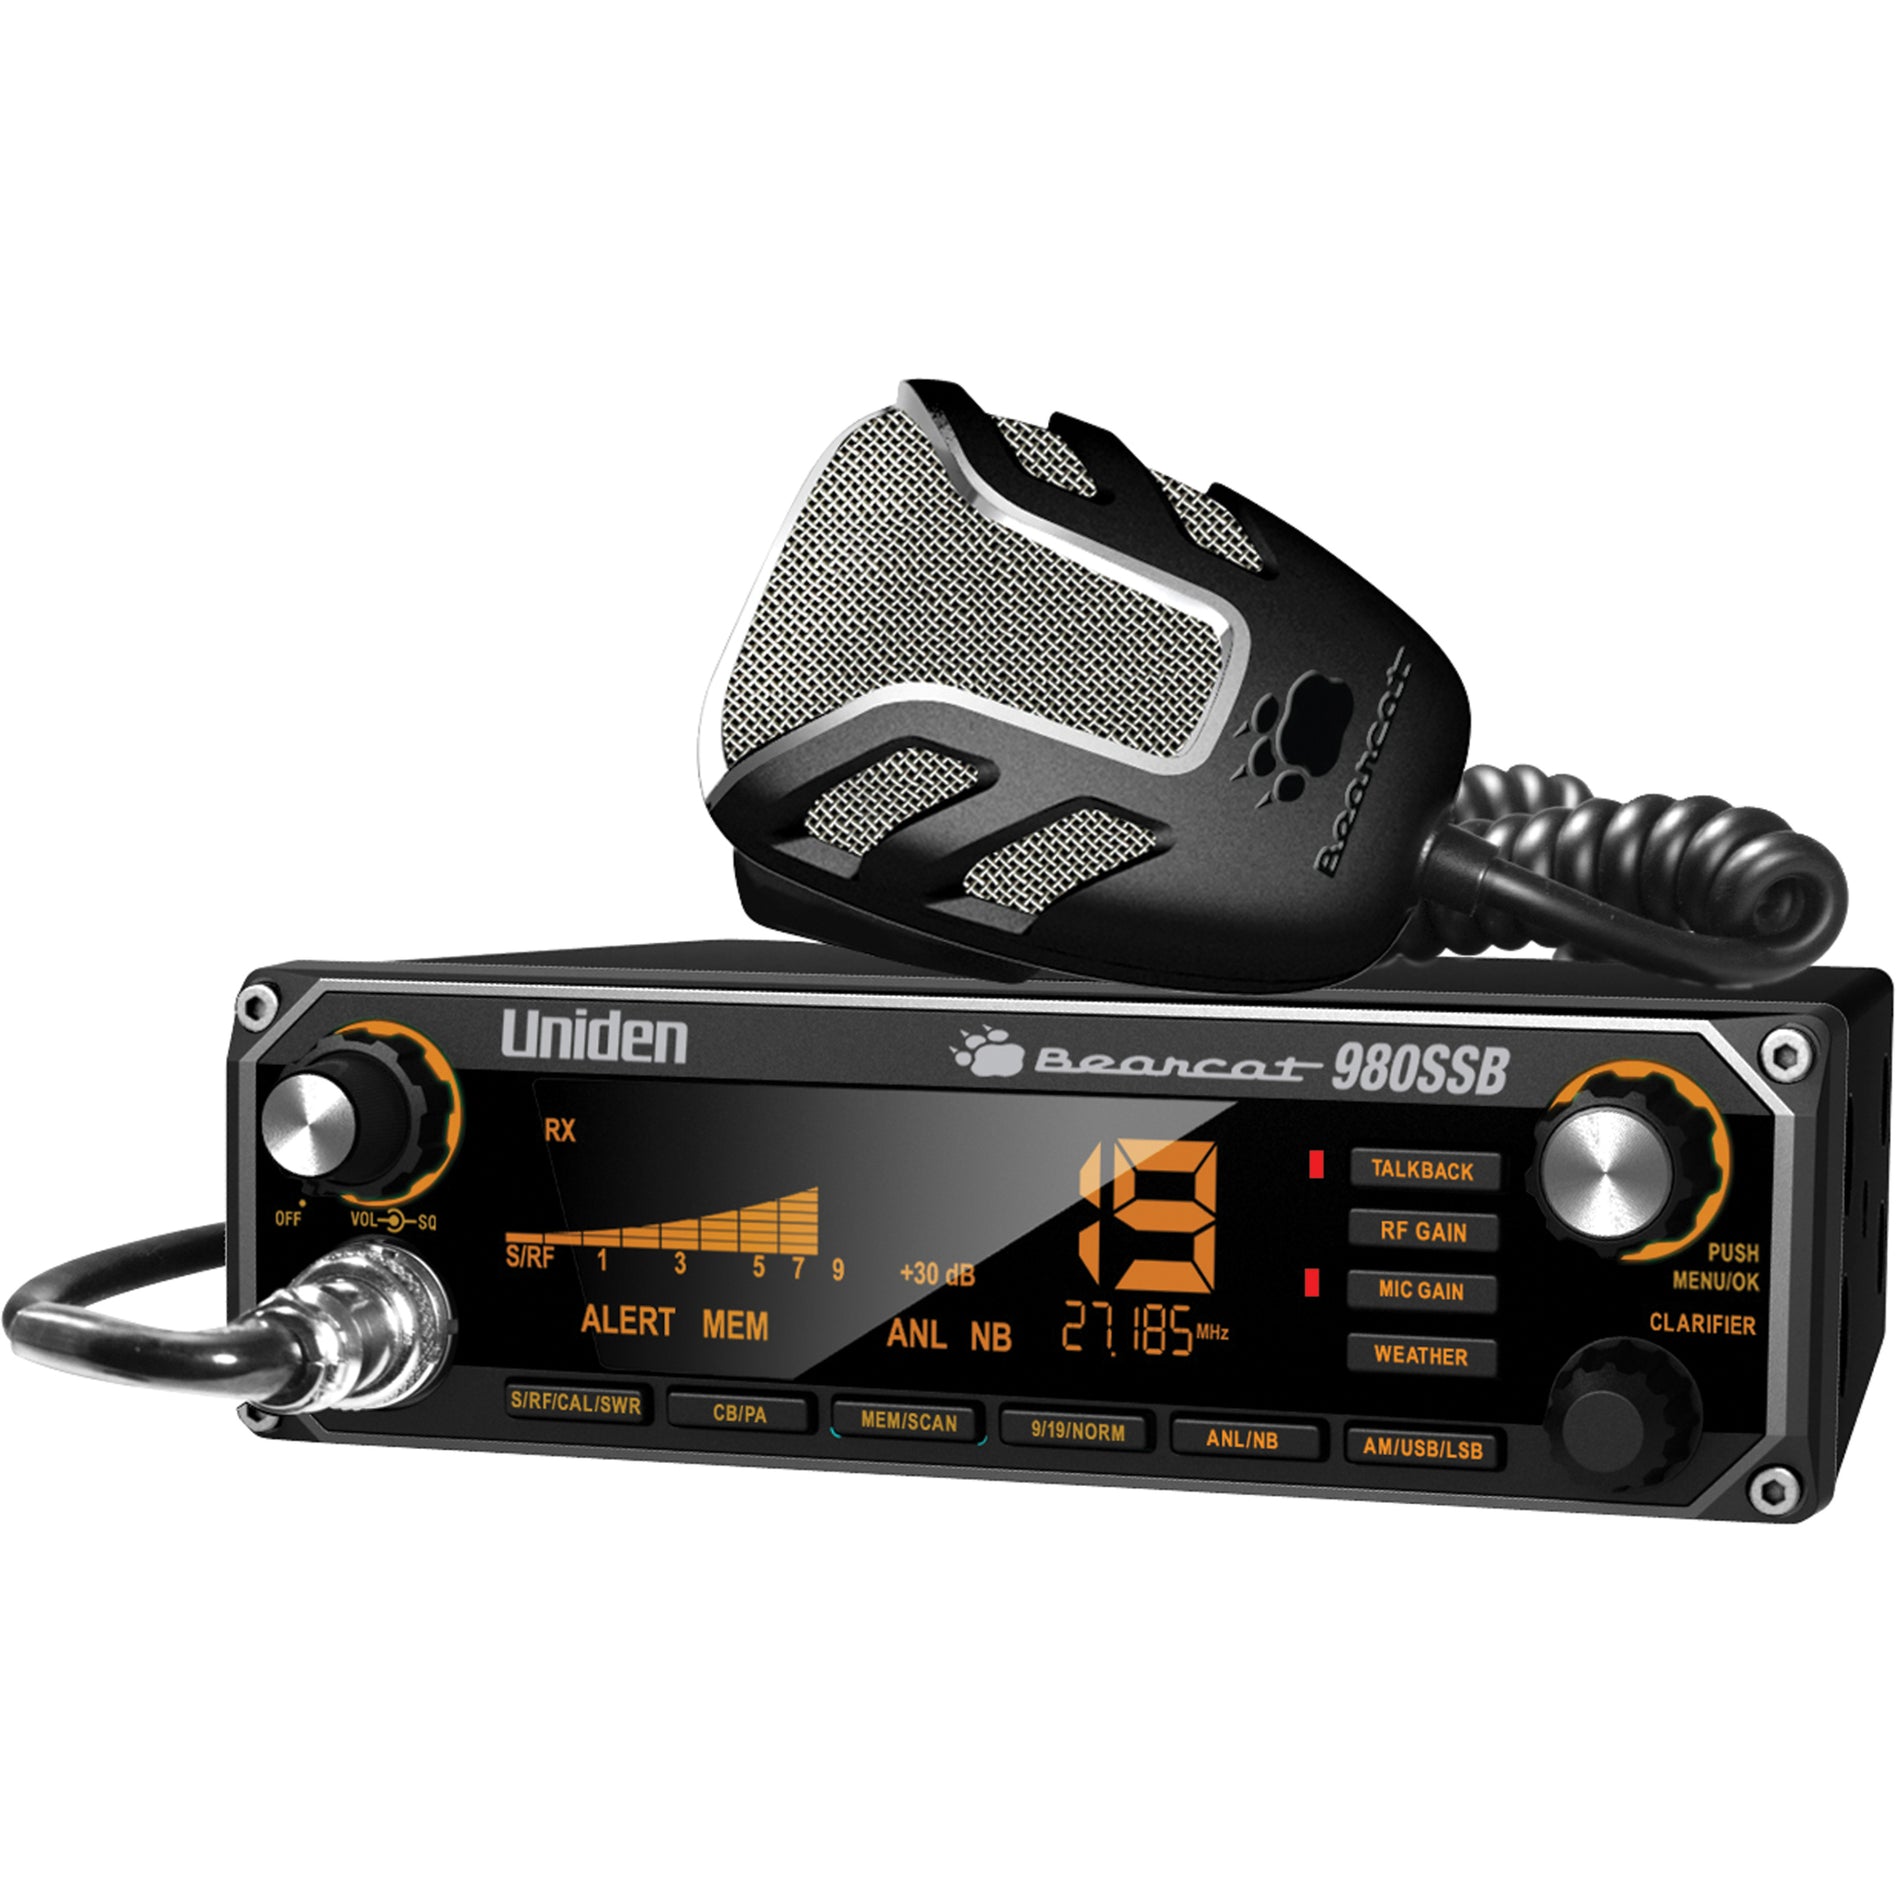 Uniden BEARCAT980SSB Bearcat 980SSB CB Radio, 40 Channel AM Operation, SSB USB/LSB, Dynamic Squelch Control